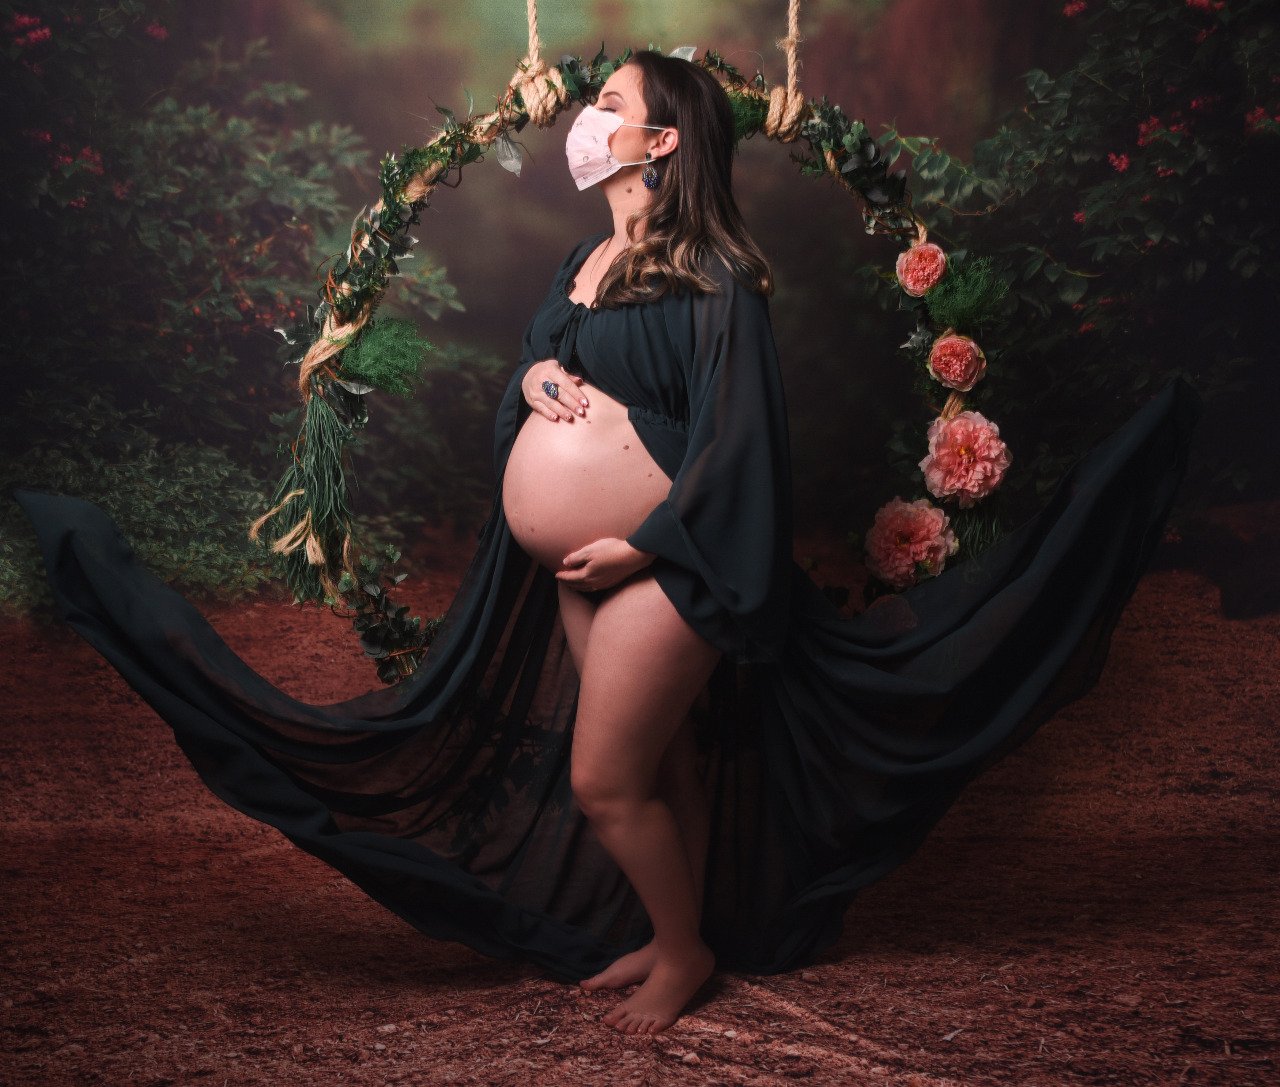 Imagens foram propostas ao final de um ensaio das grávidas 